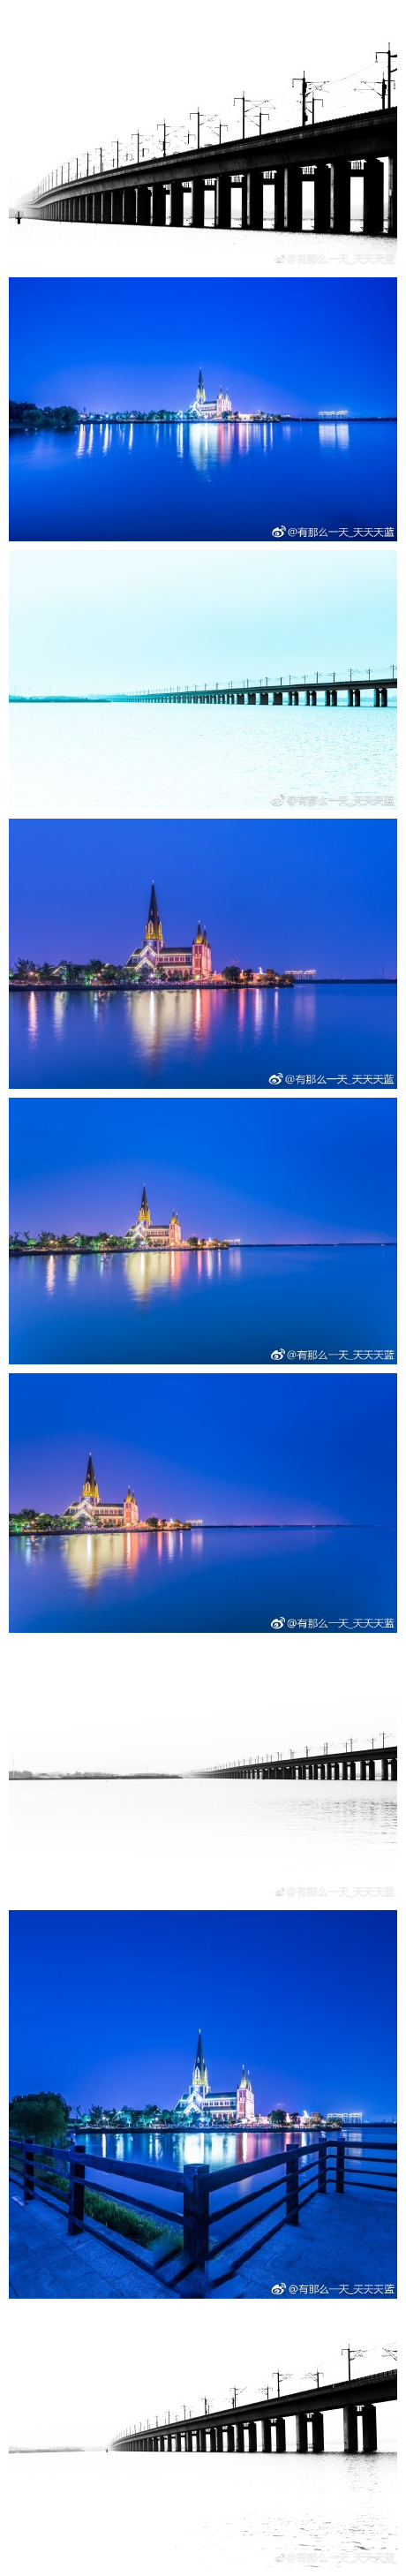 京沪高铁阳澄湖段和阳澄湖教堂